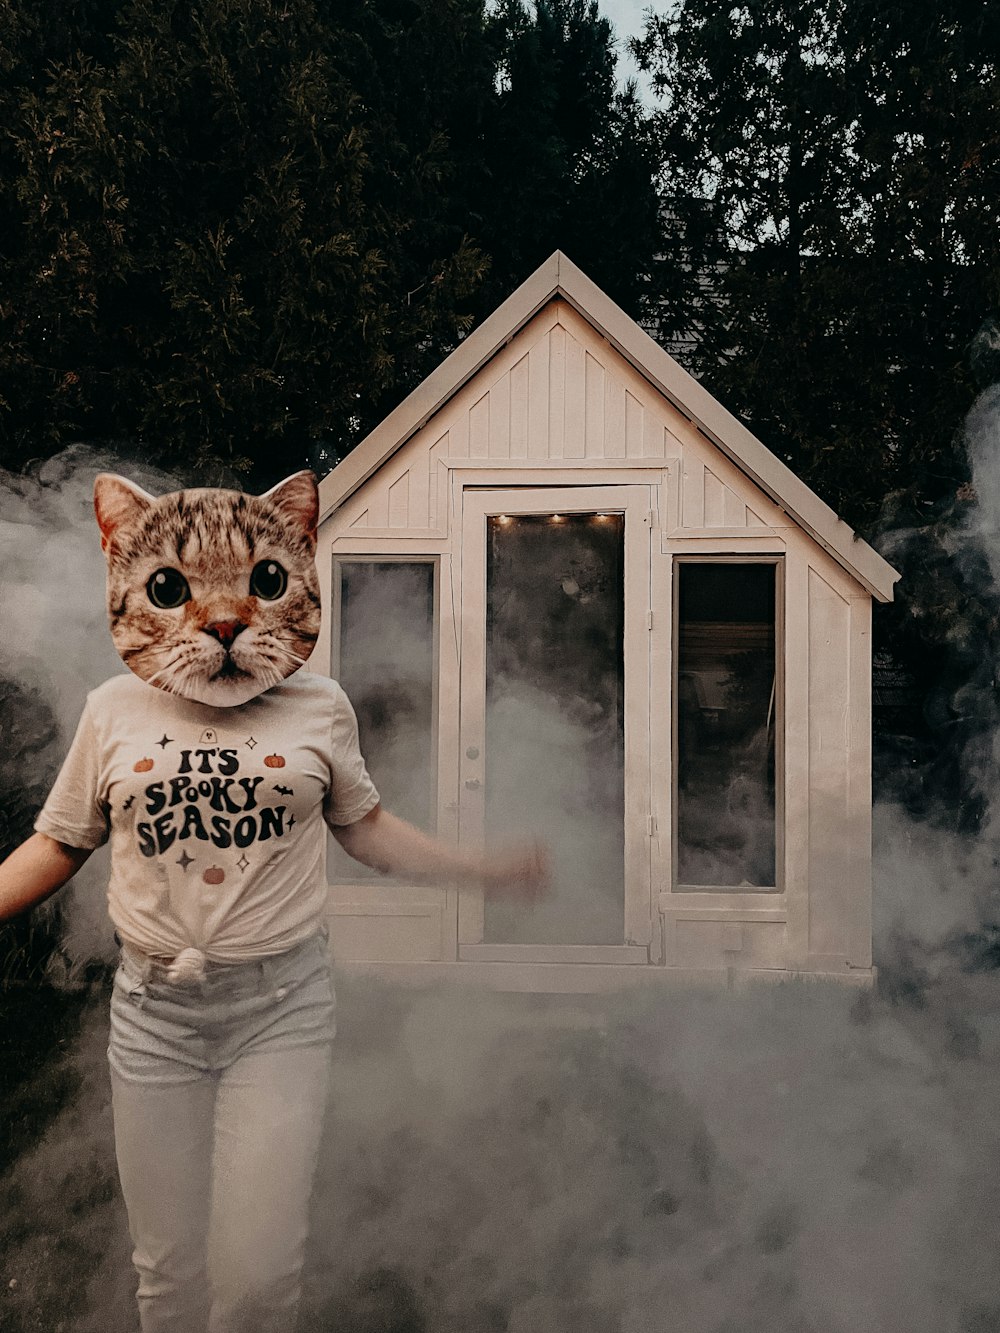 Un chat portant un t-shirt qui dit qu’il est sécuritaire de le briser